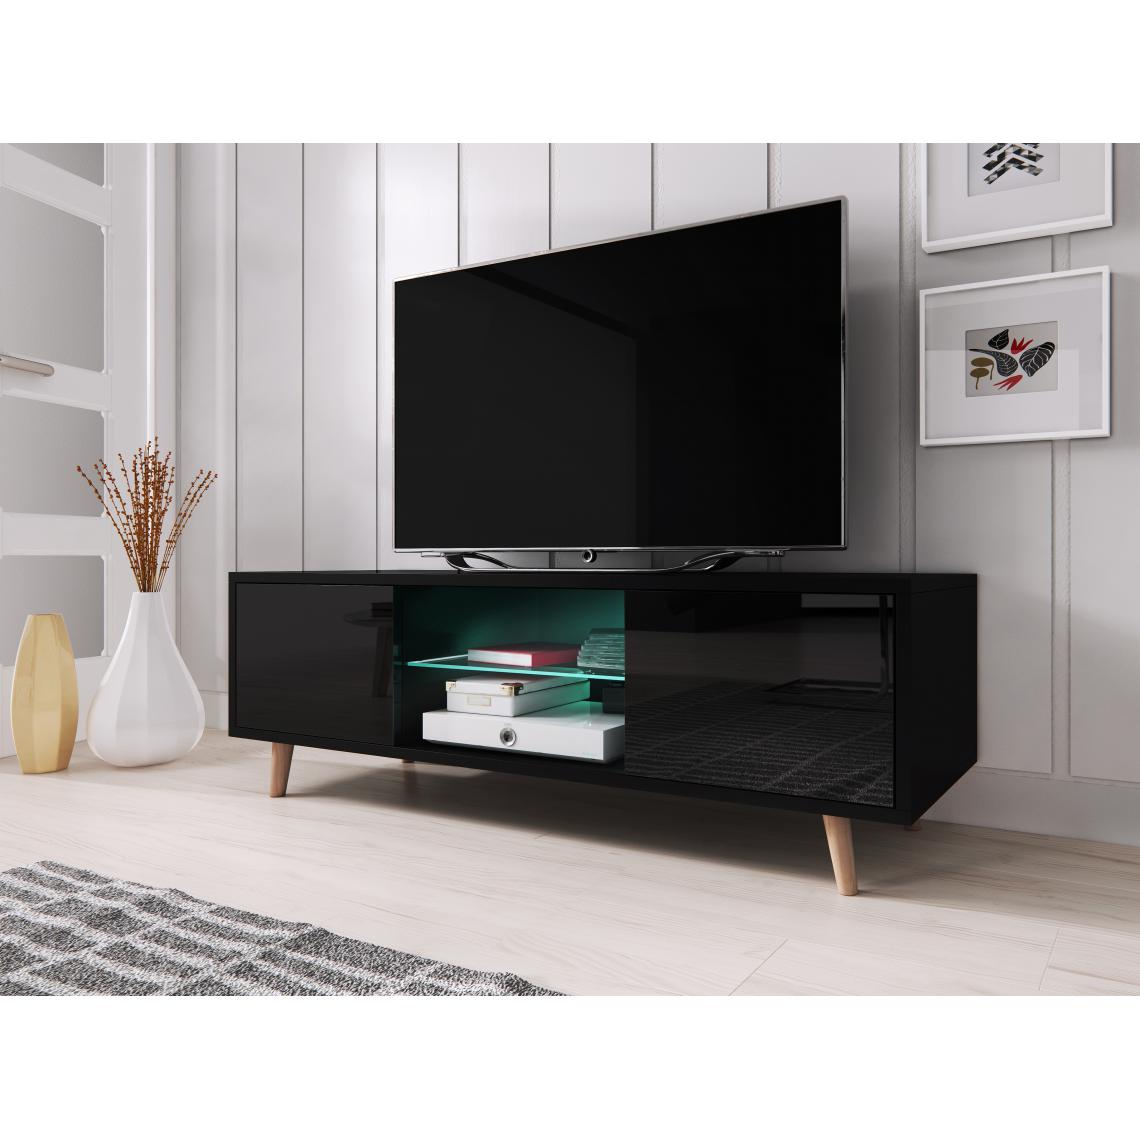 3xeliving - Meuble TV scandinave et minimaliste Cindi avec éclairage LED. Couleur noire. - Meubles TV, Hi-Fi